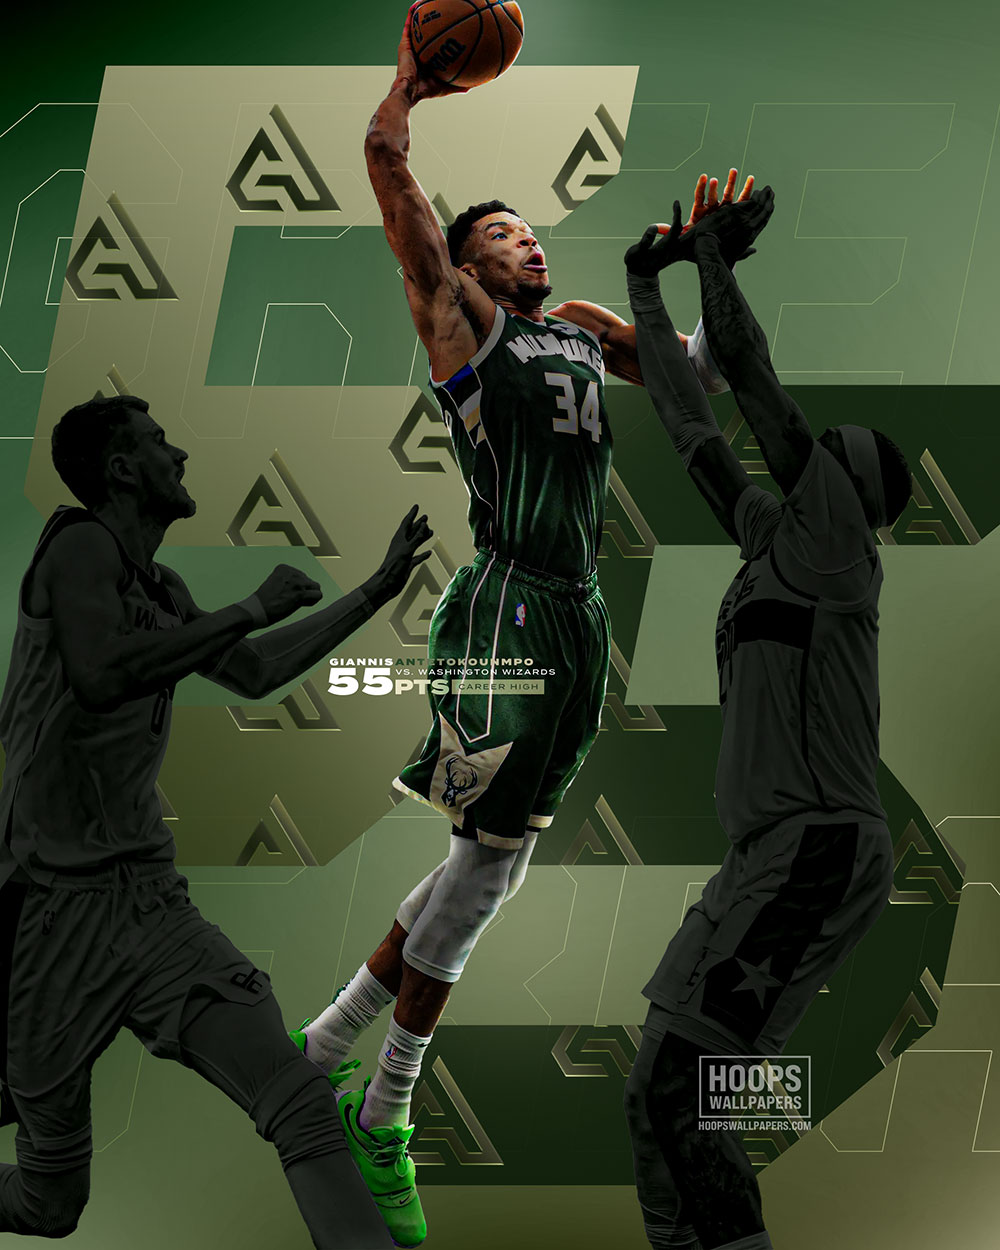 Giannis Antetokounmpo MVP poster